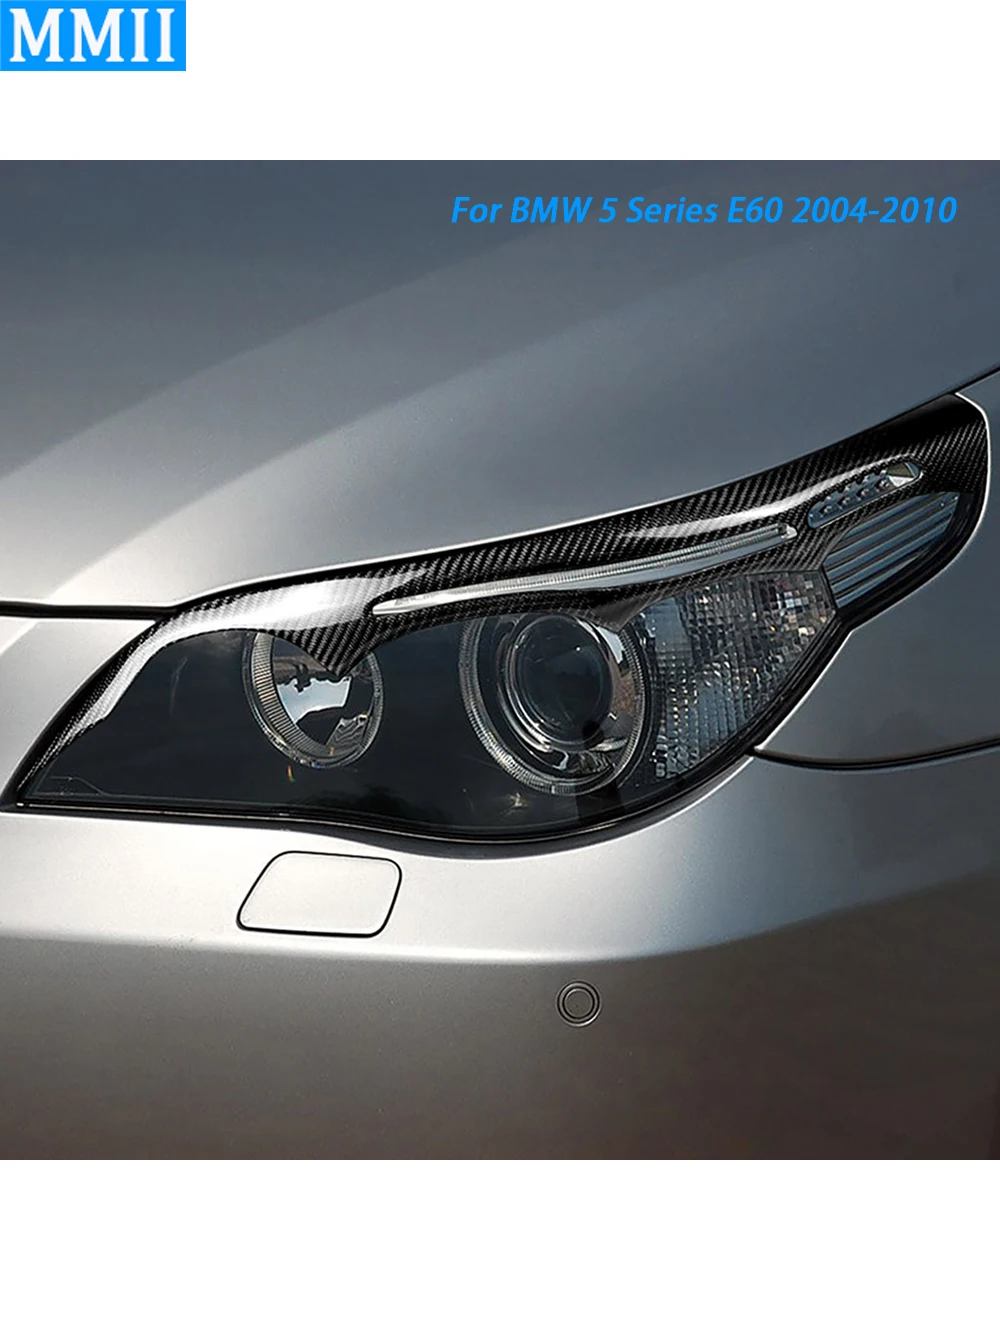 

Передний налобный фонарь из углеродного волокна для BMW 5 серии E60 2004-2010, декоративное украшение для автомобиля